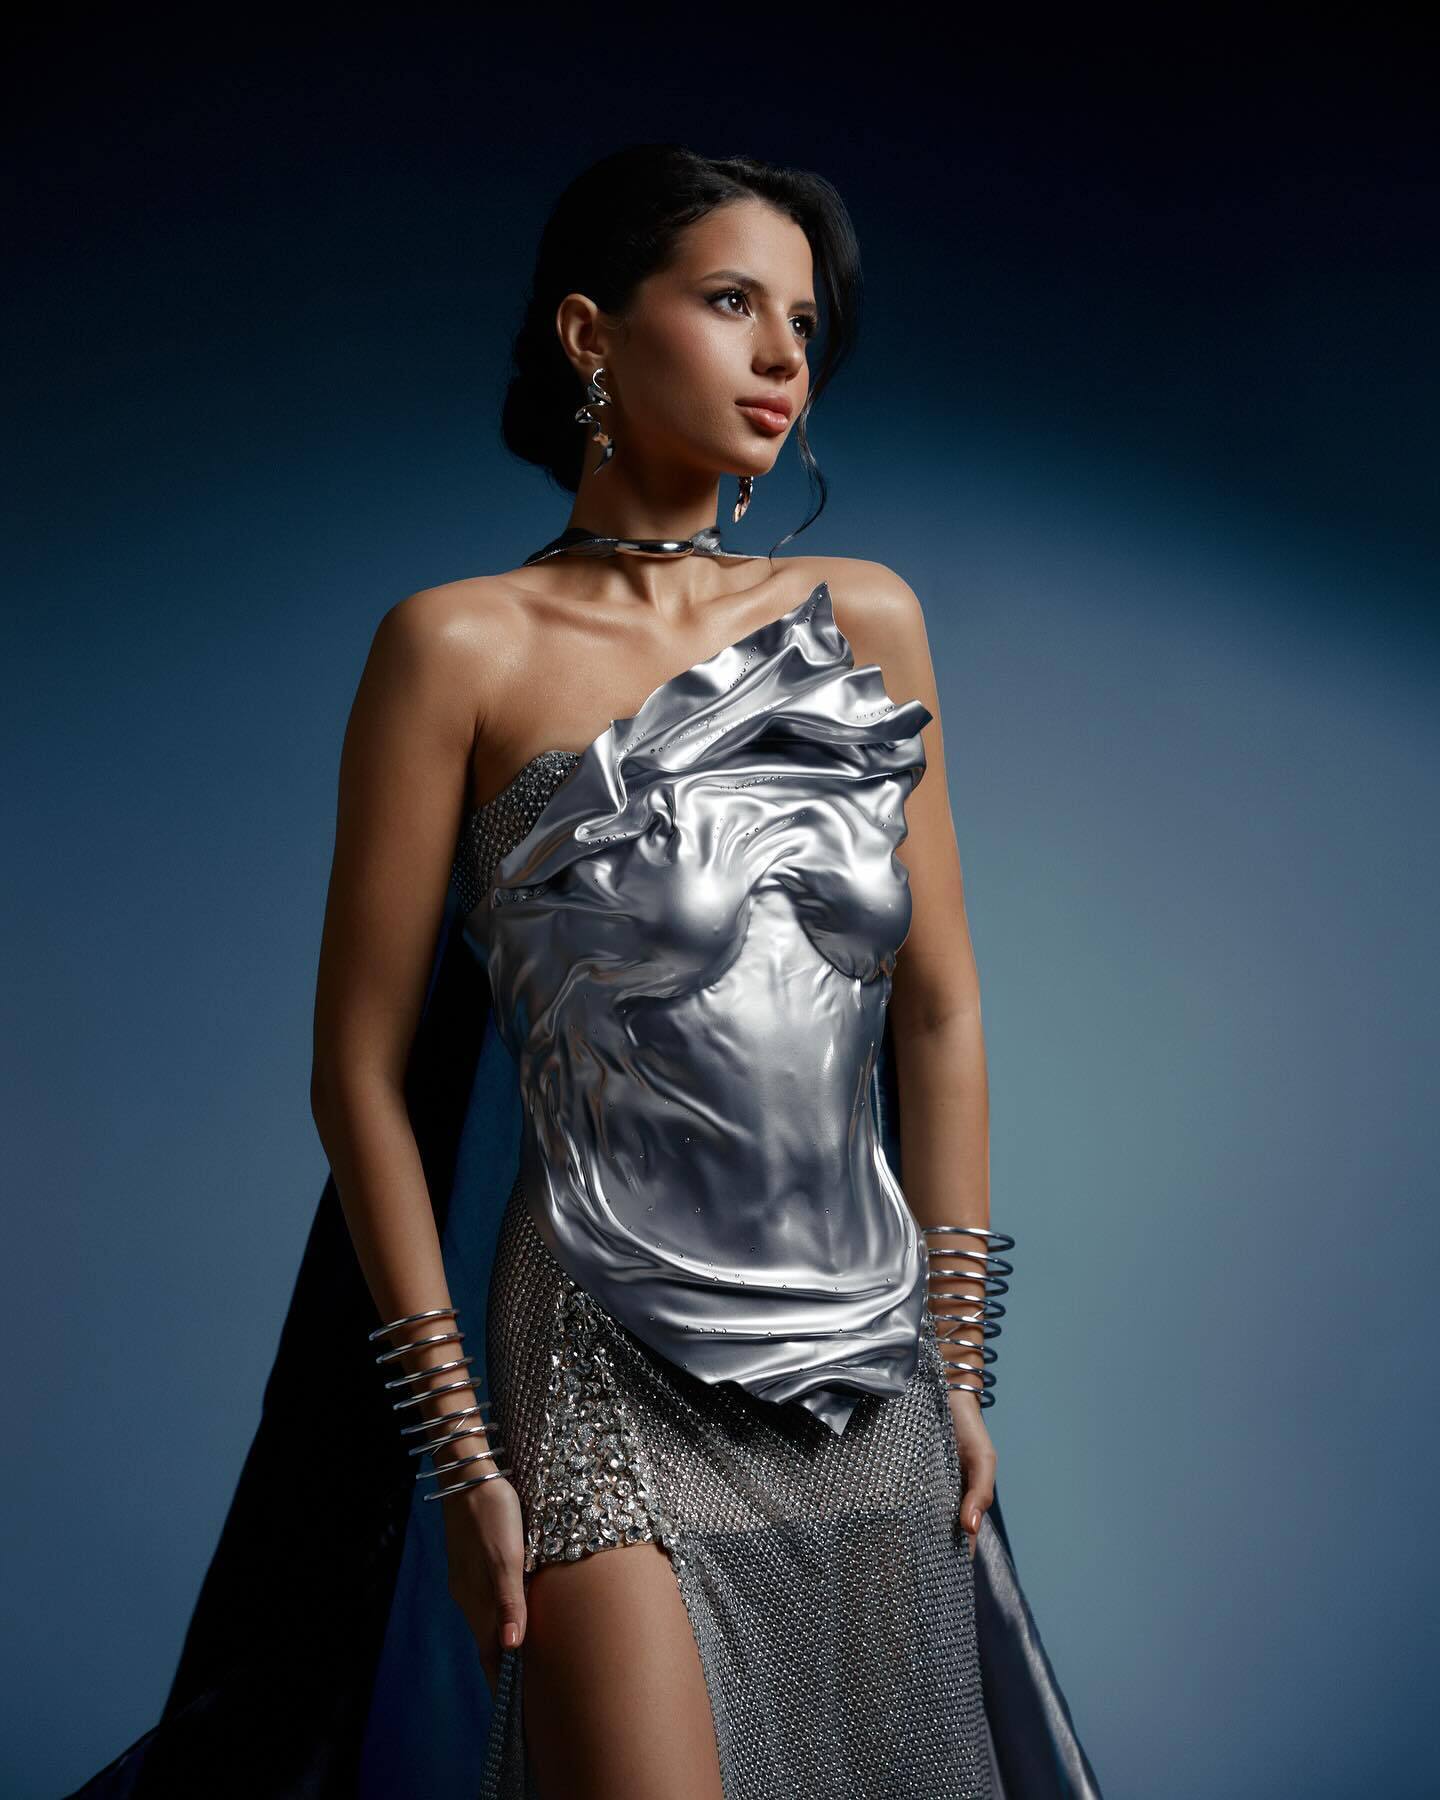 Шансы на победу большие: что символизирует платье "Стальная леди", которое выбрала украинка для конкурса "Мисс Мира 2023"